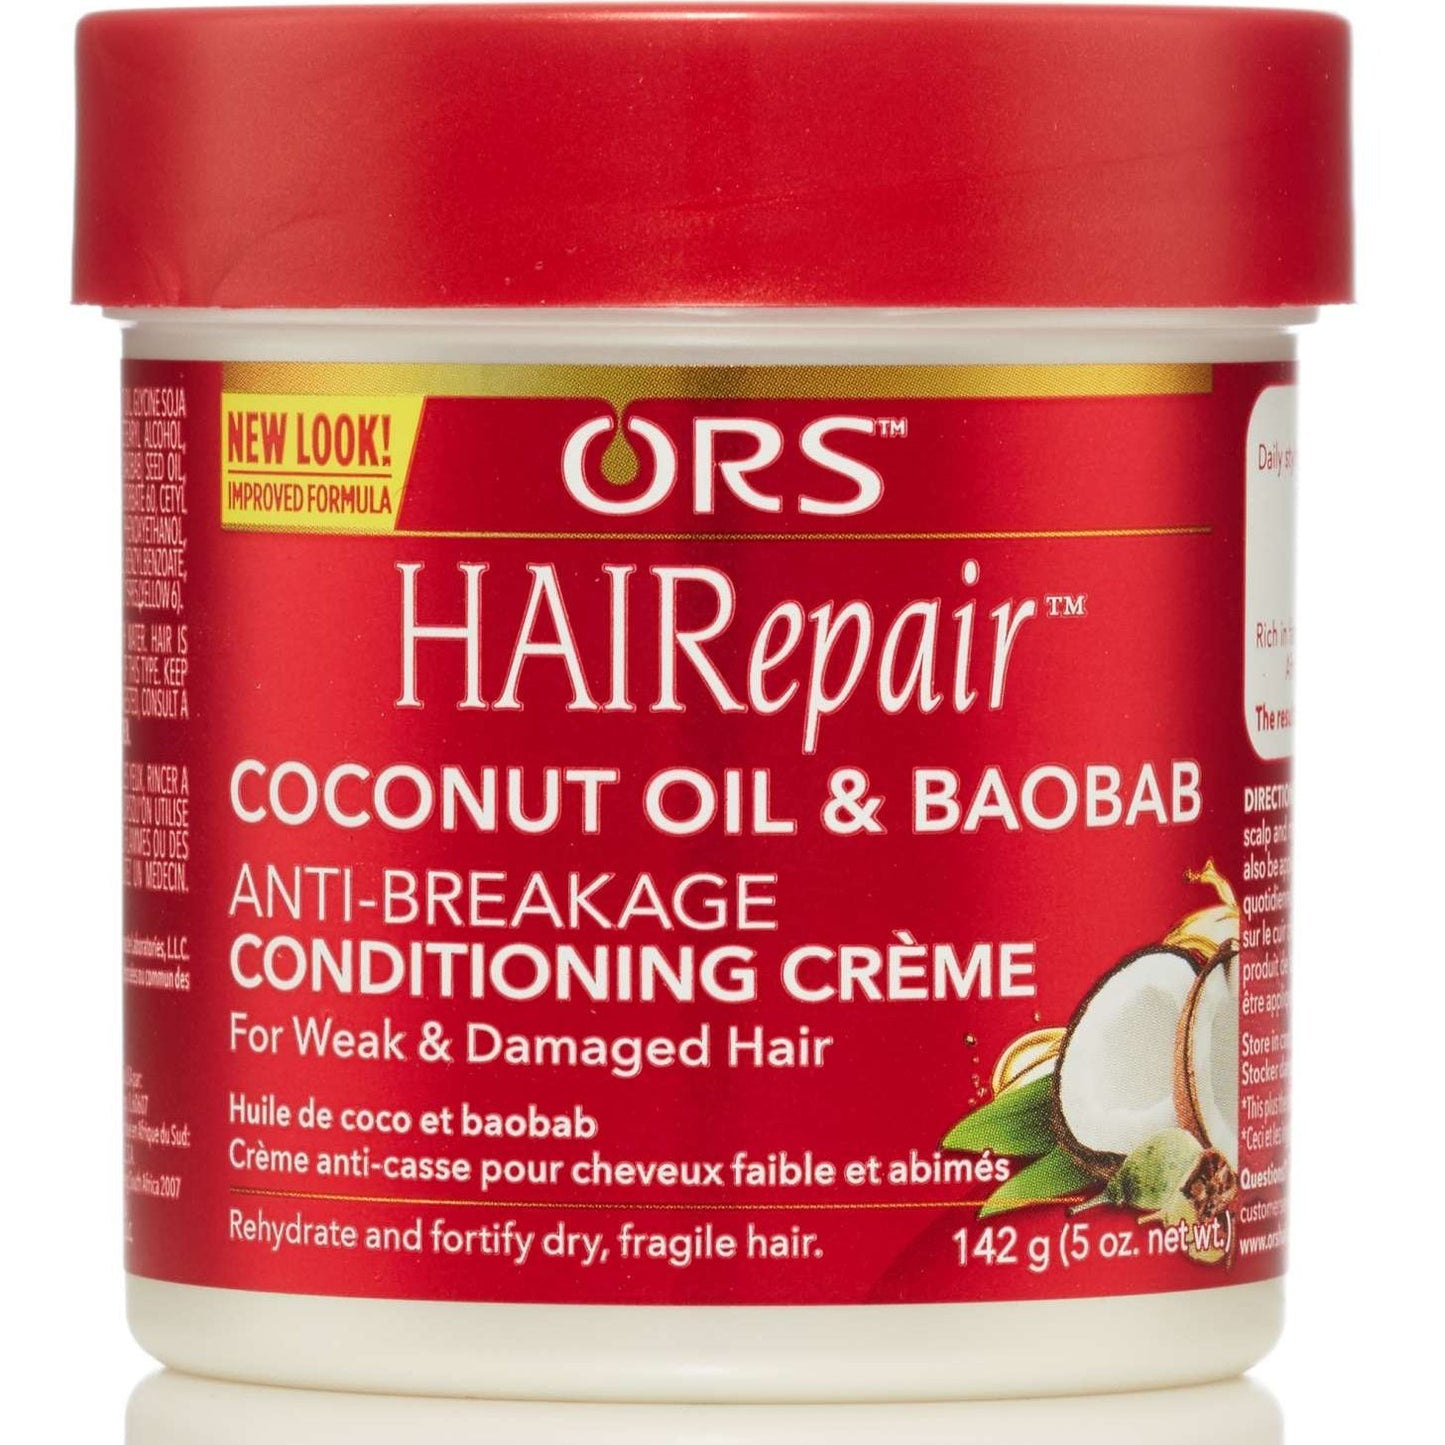 Ors Hair Repair Anti-Breakage Cream